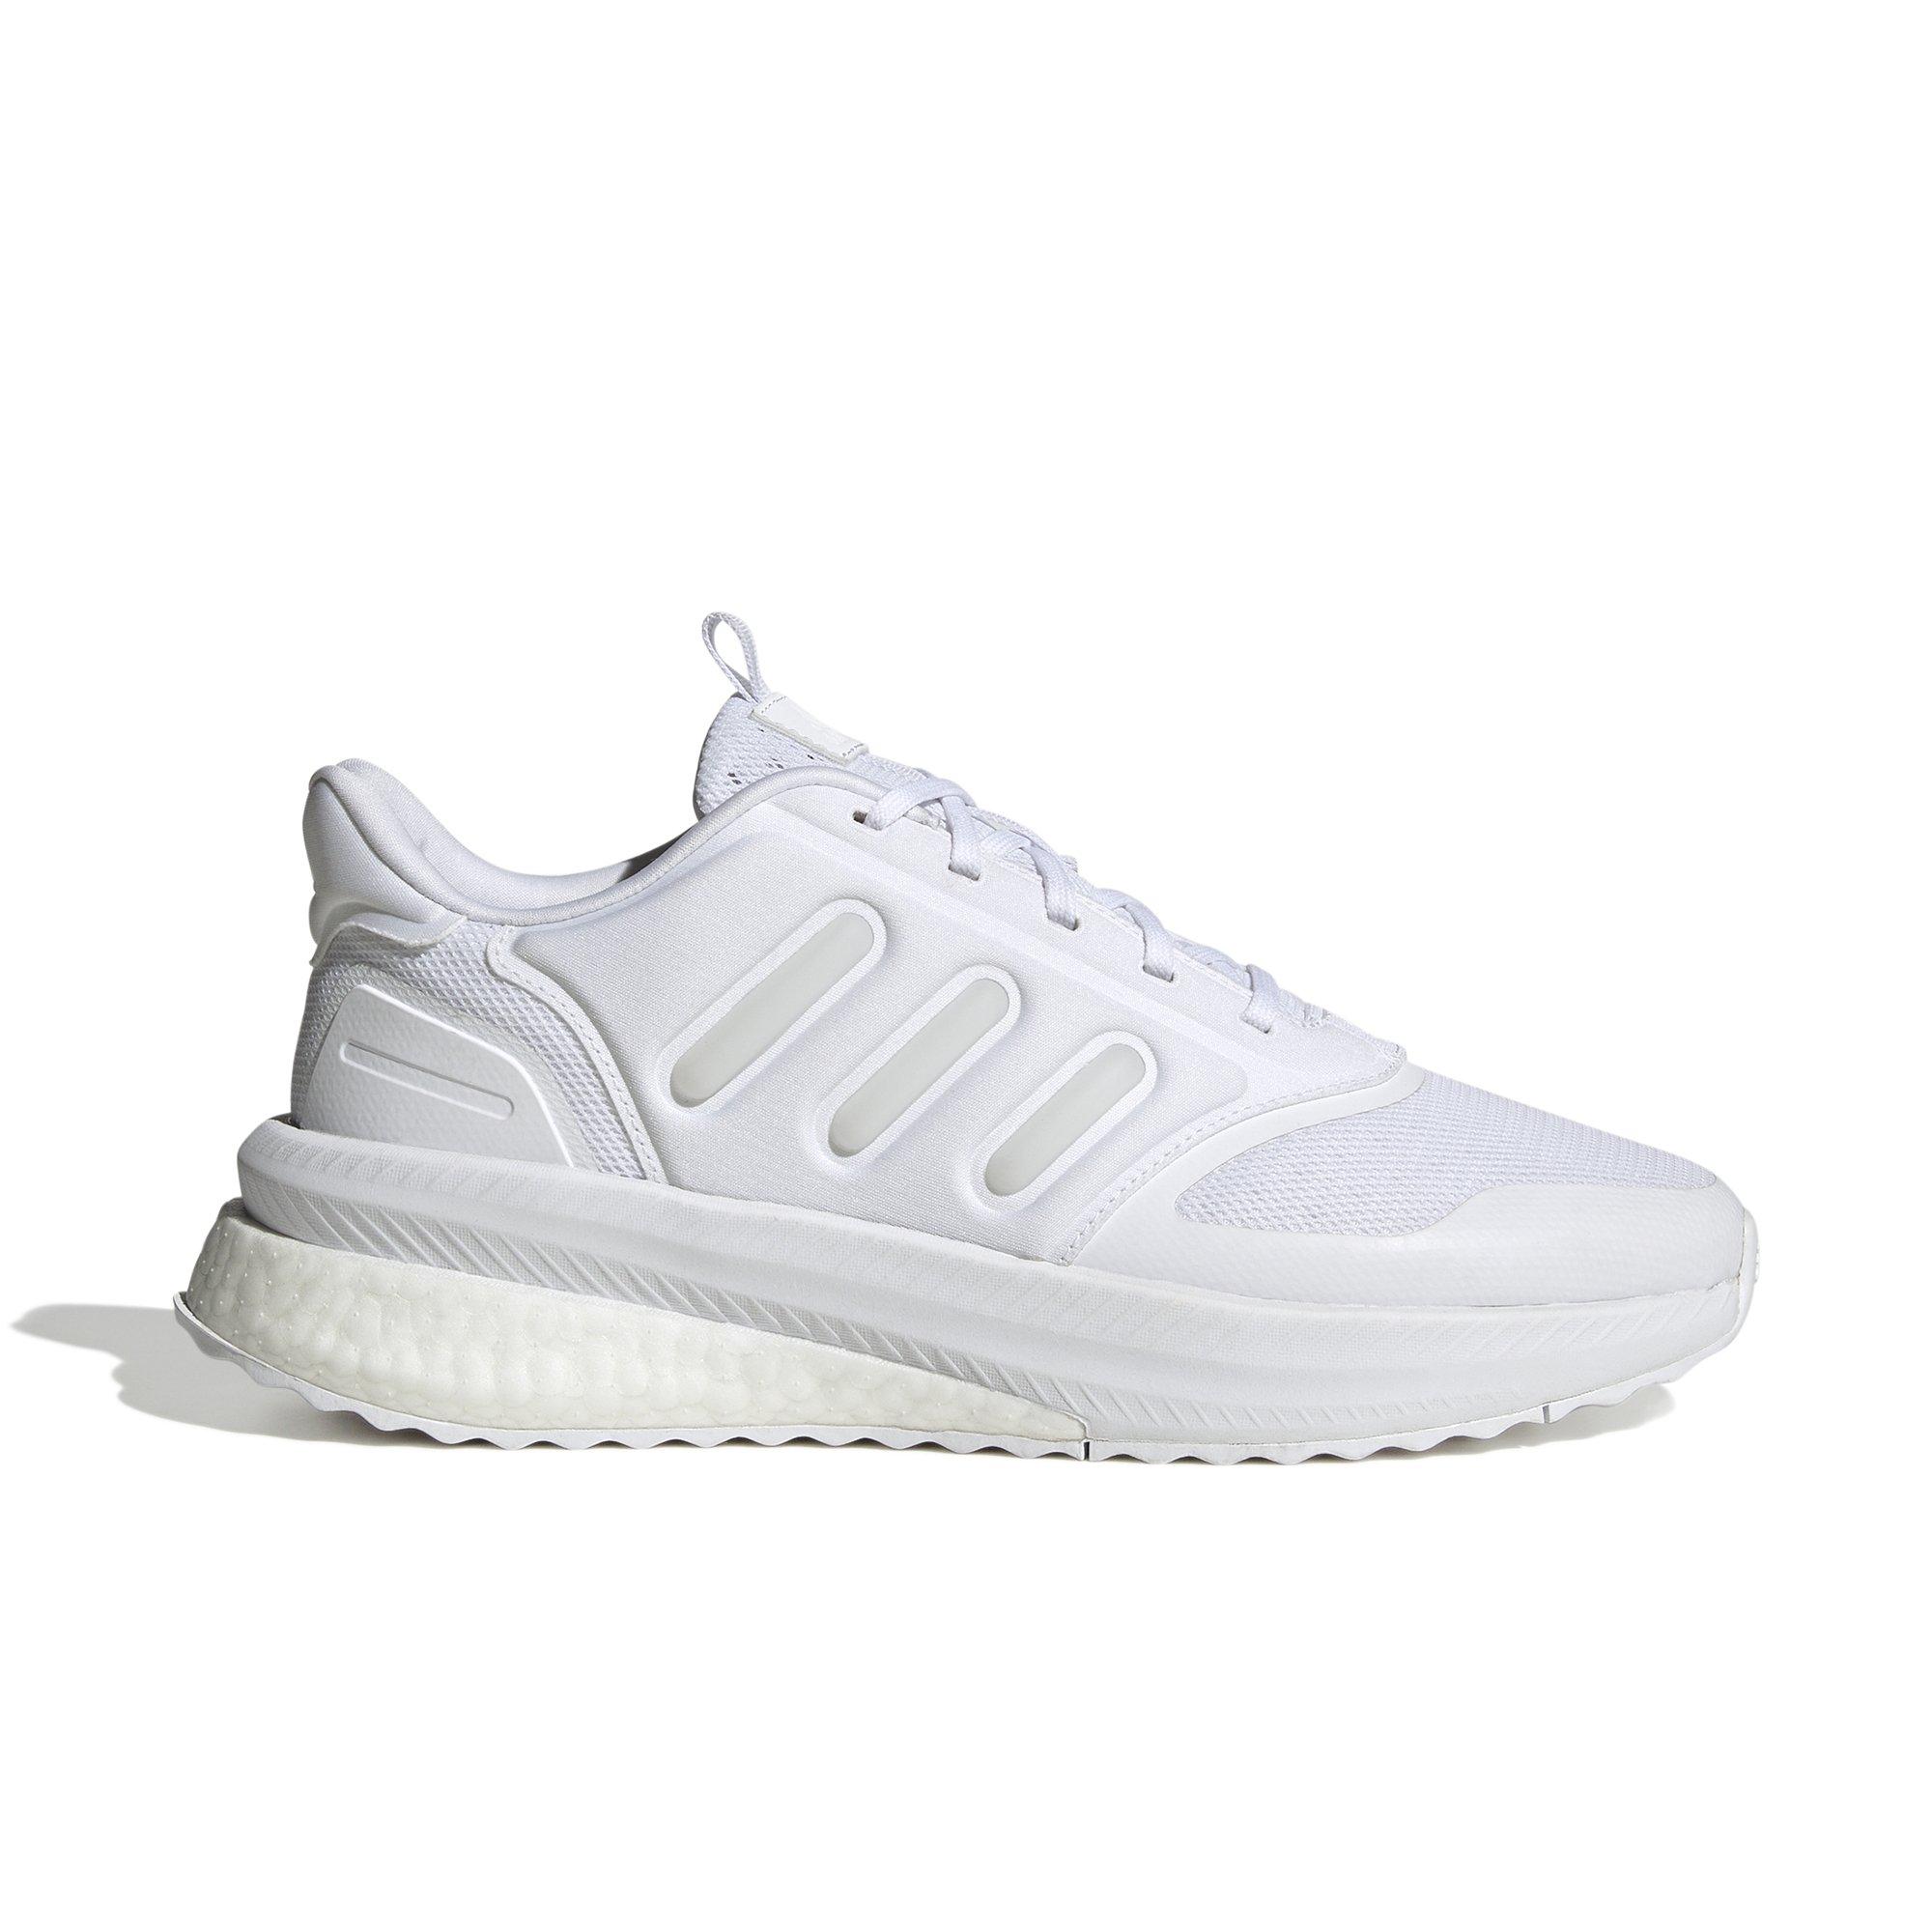 X_PLR Phase "Ftwr White" Running Shoe